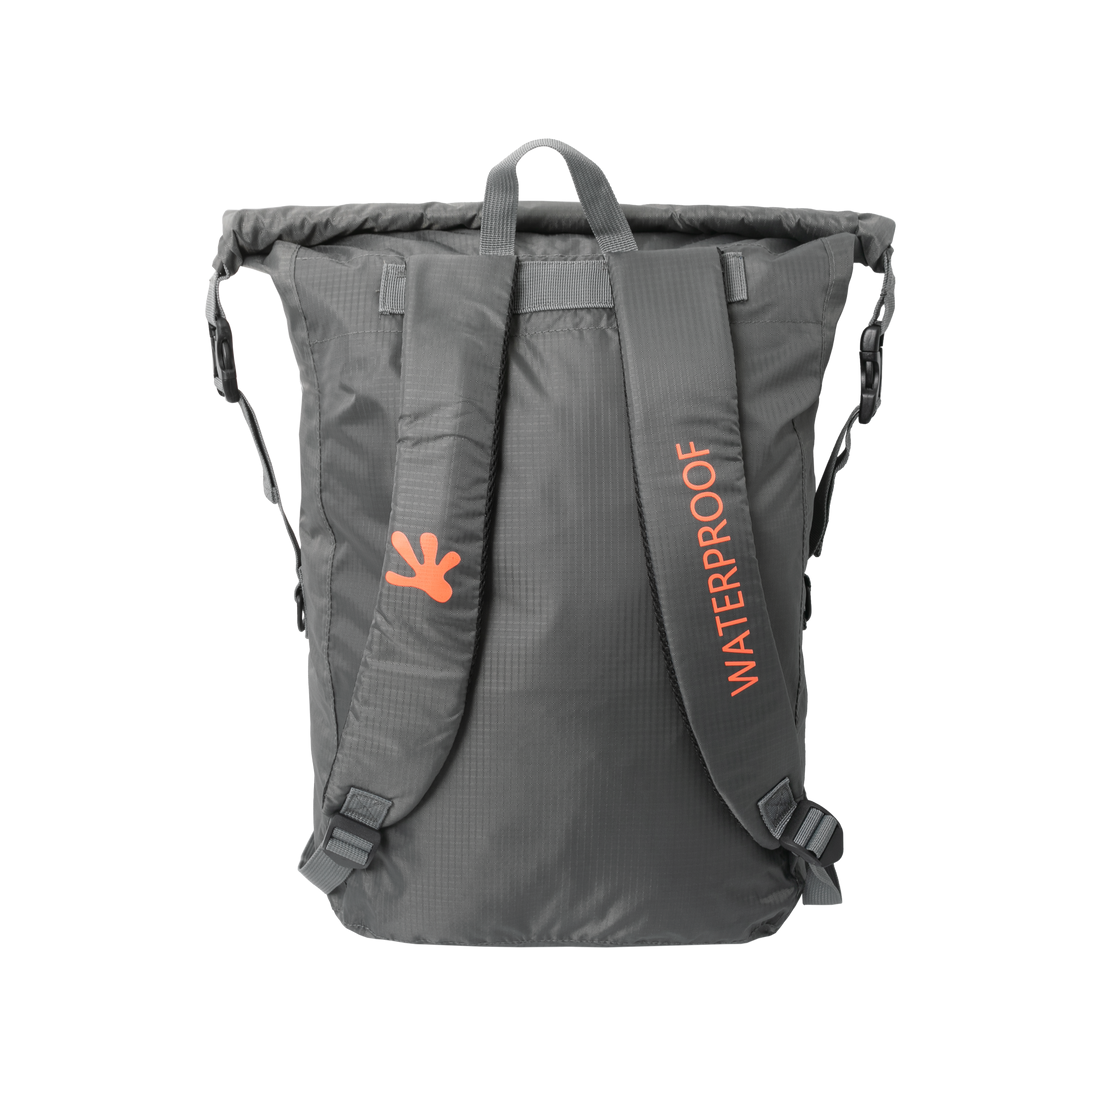 Lightweight WP Backpack - Grey/Orange